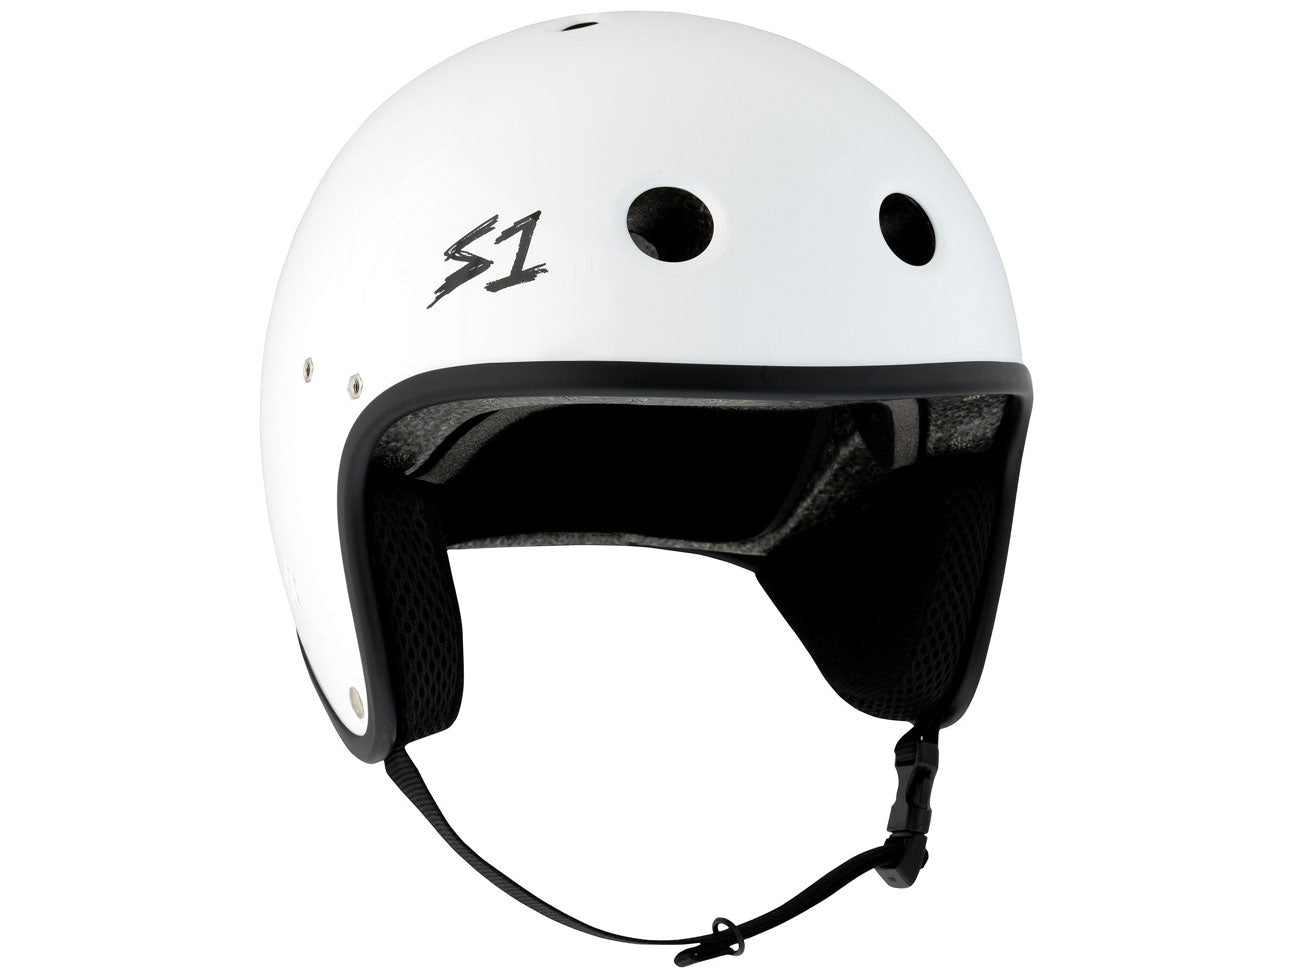 Griff S1 E-Bike Helmet